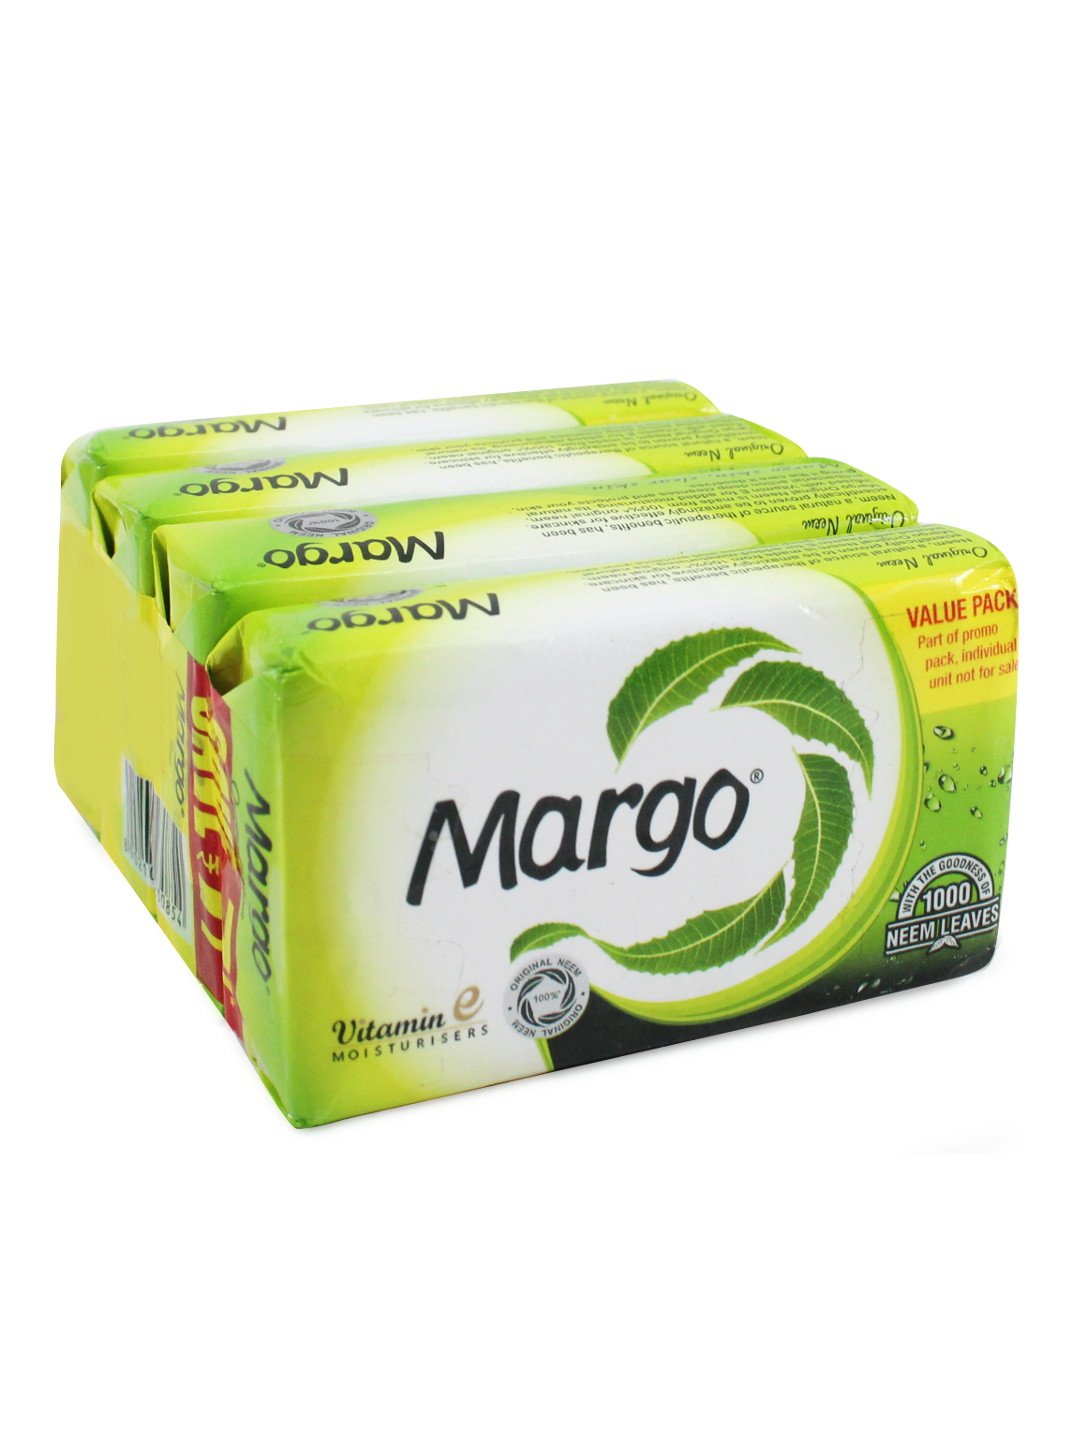 Margo Original Neem Soap 75g X 4, 300g